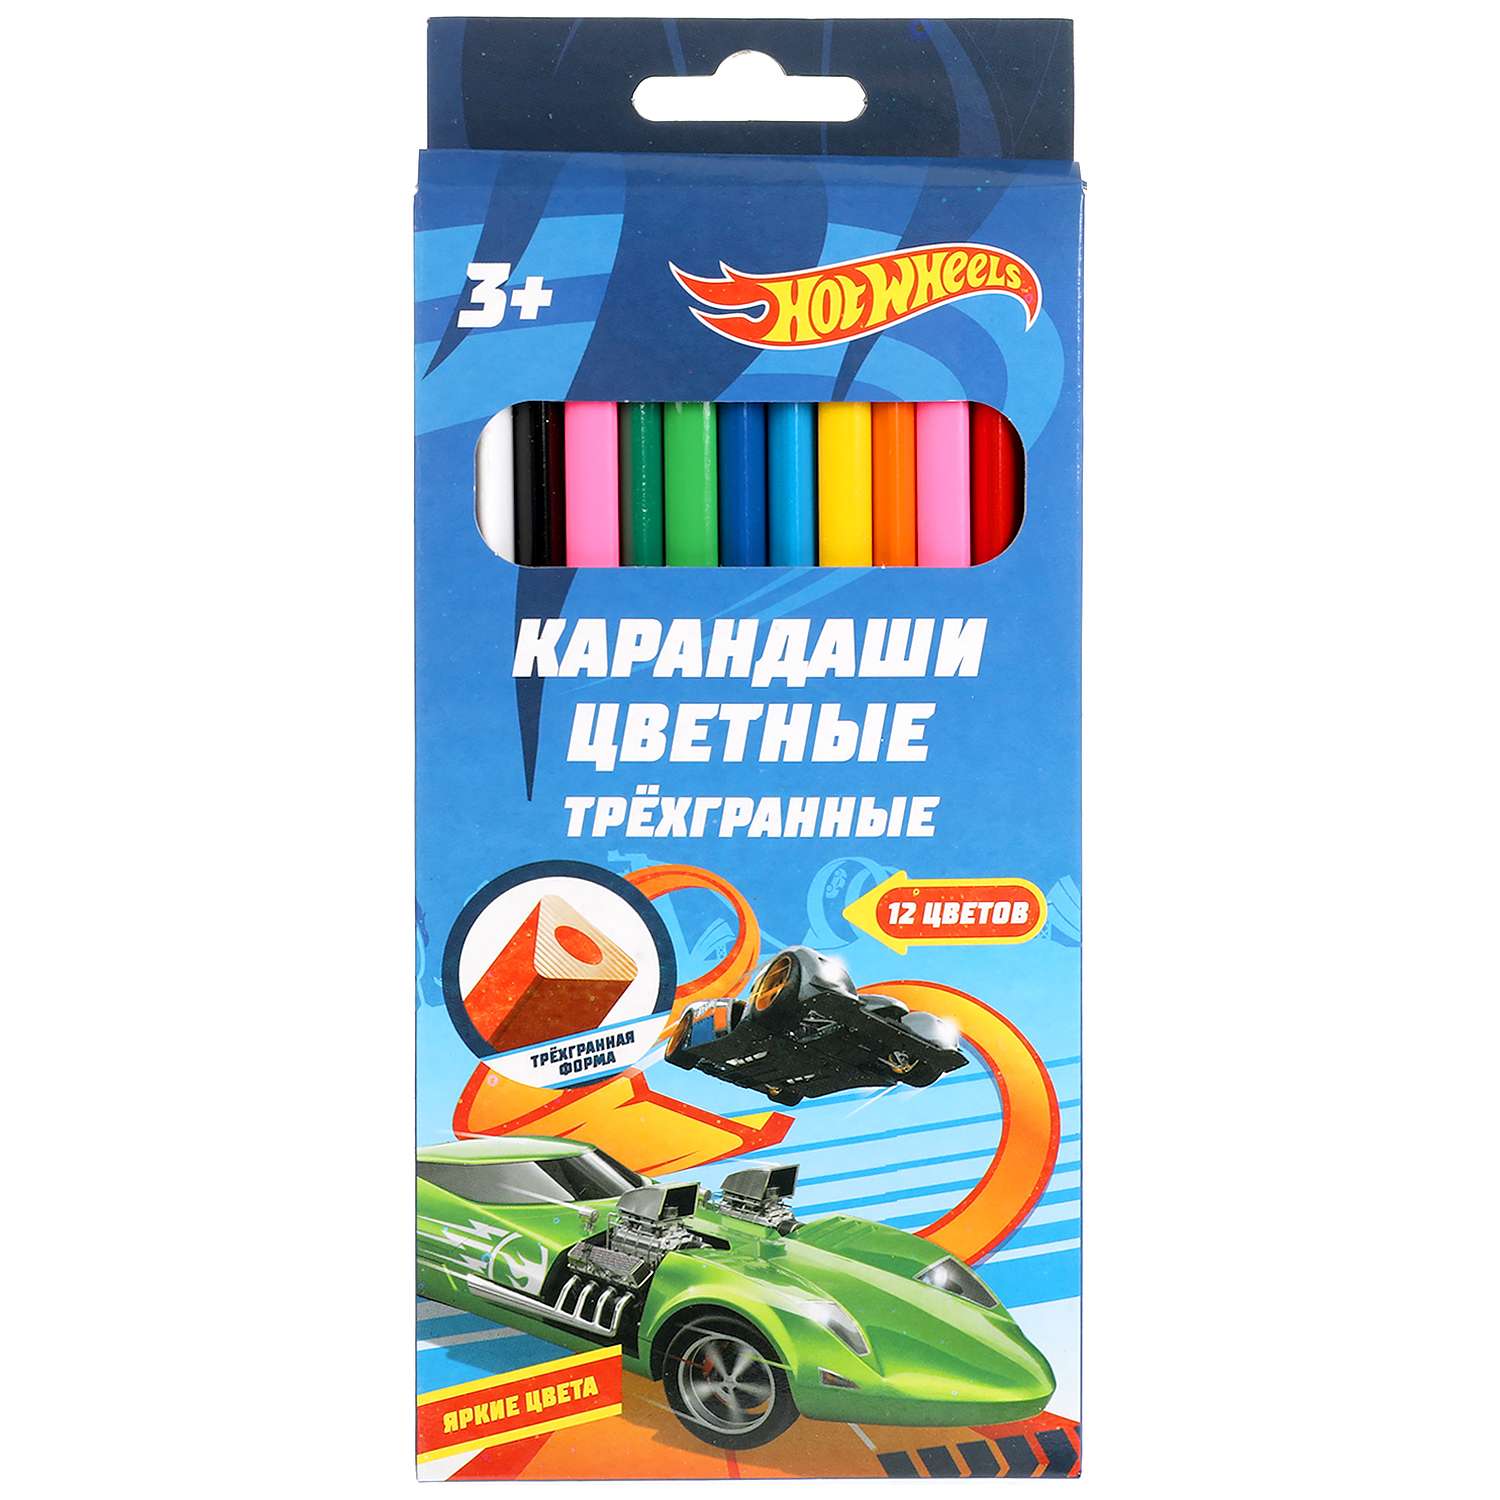 Цветные карандаши Умка Hot Wheels 12 цветов трёхгранные 313758 - фото 1